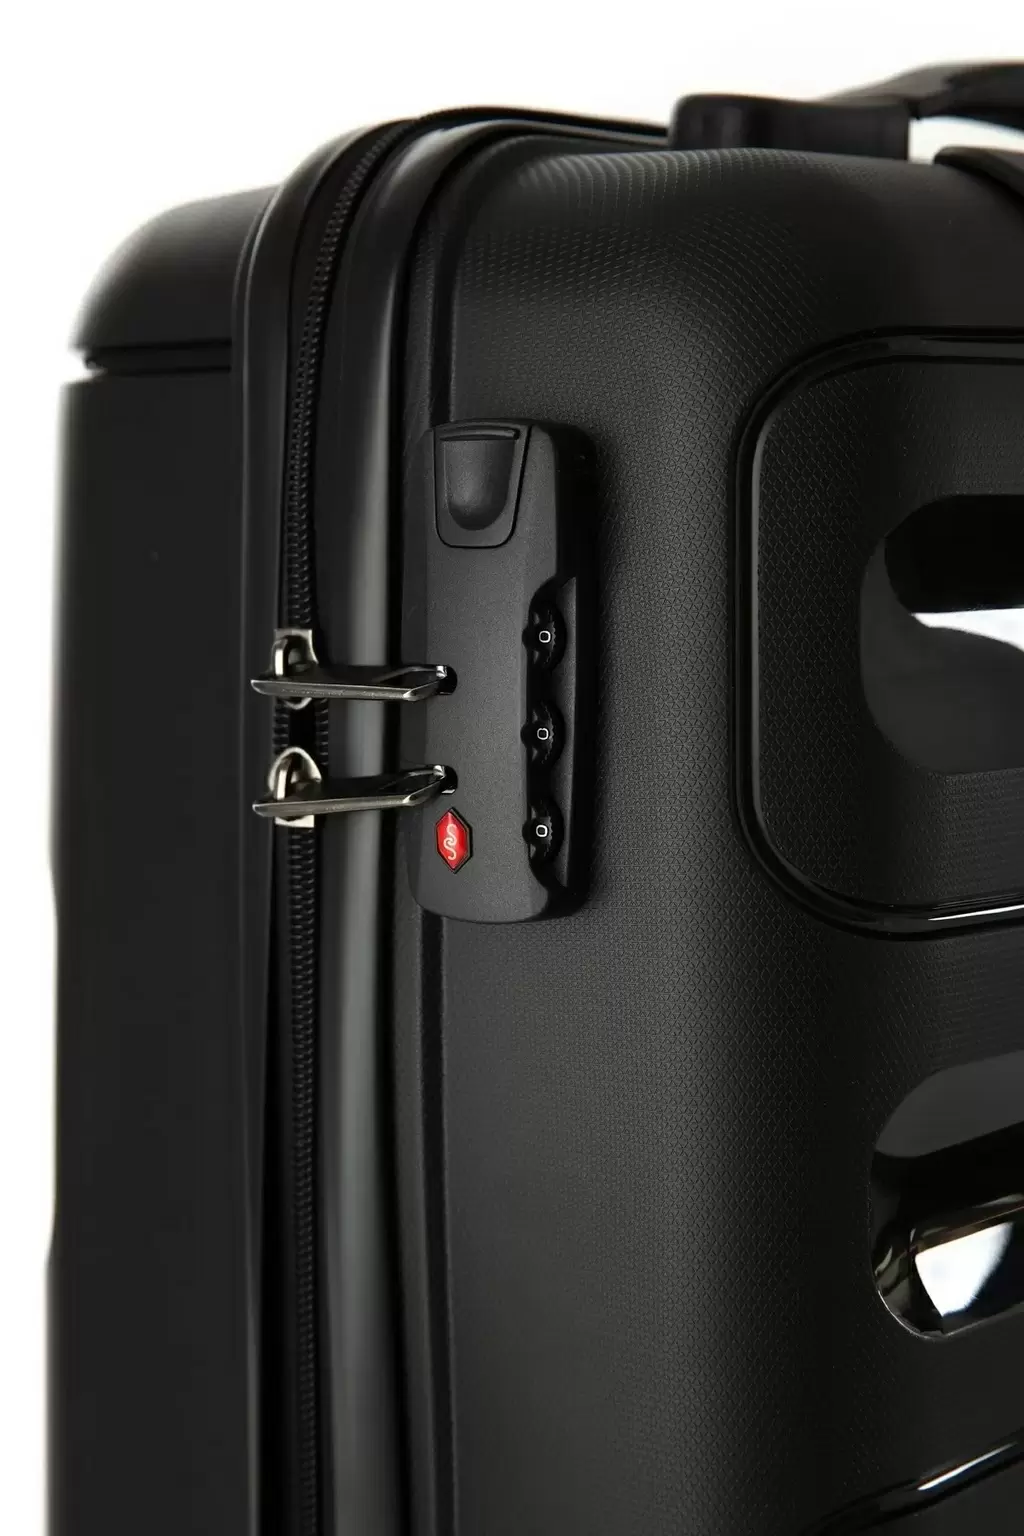 Set de valize CCS 5225 Set, negru